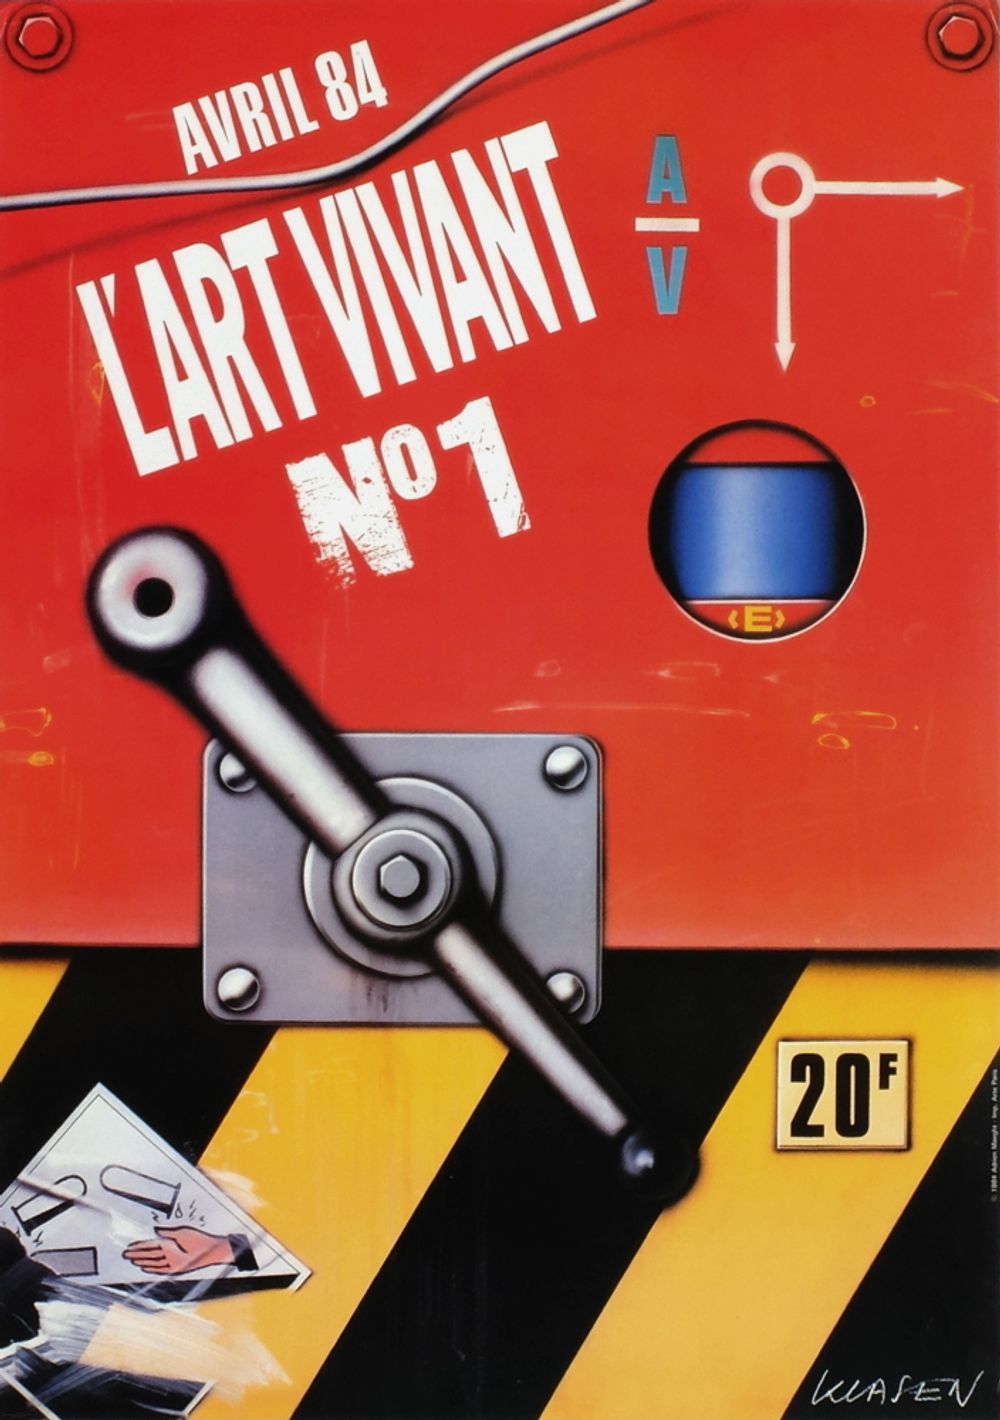 Expo 84 - Art Vivant n°1